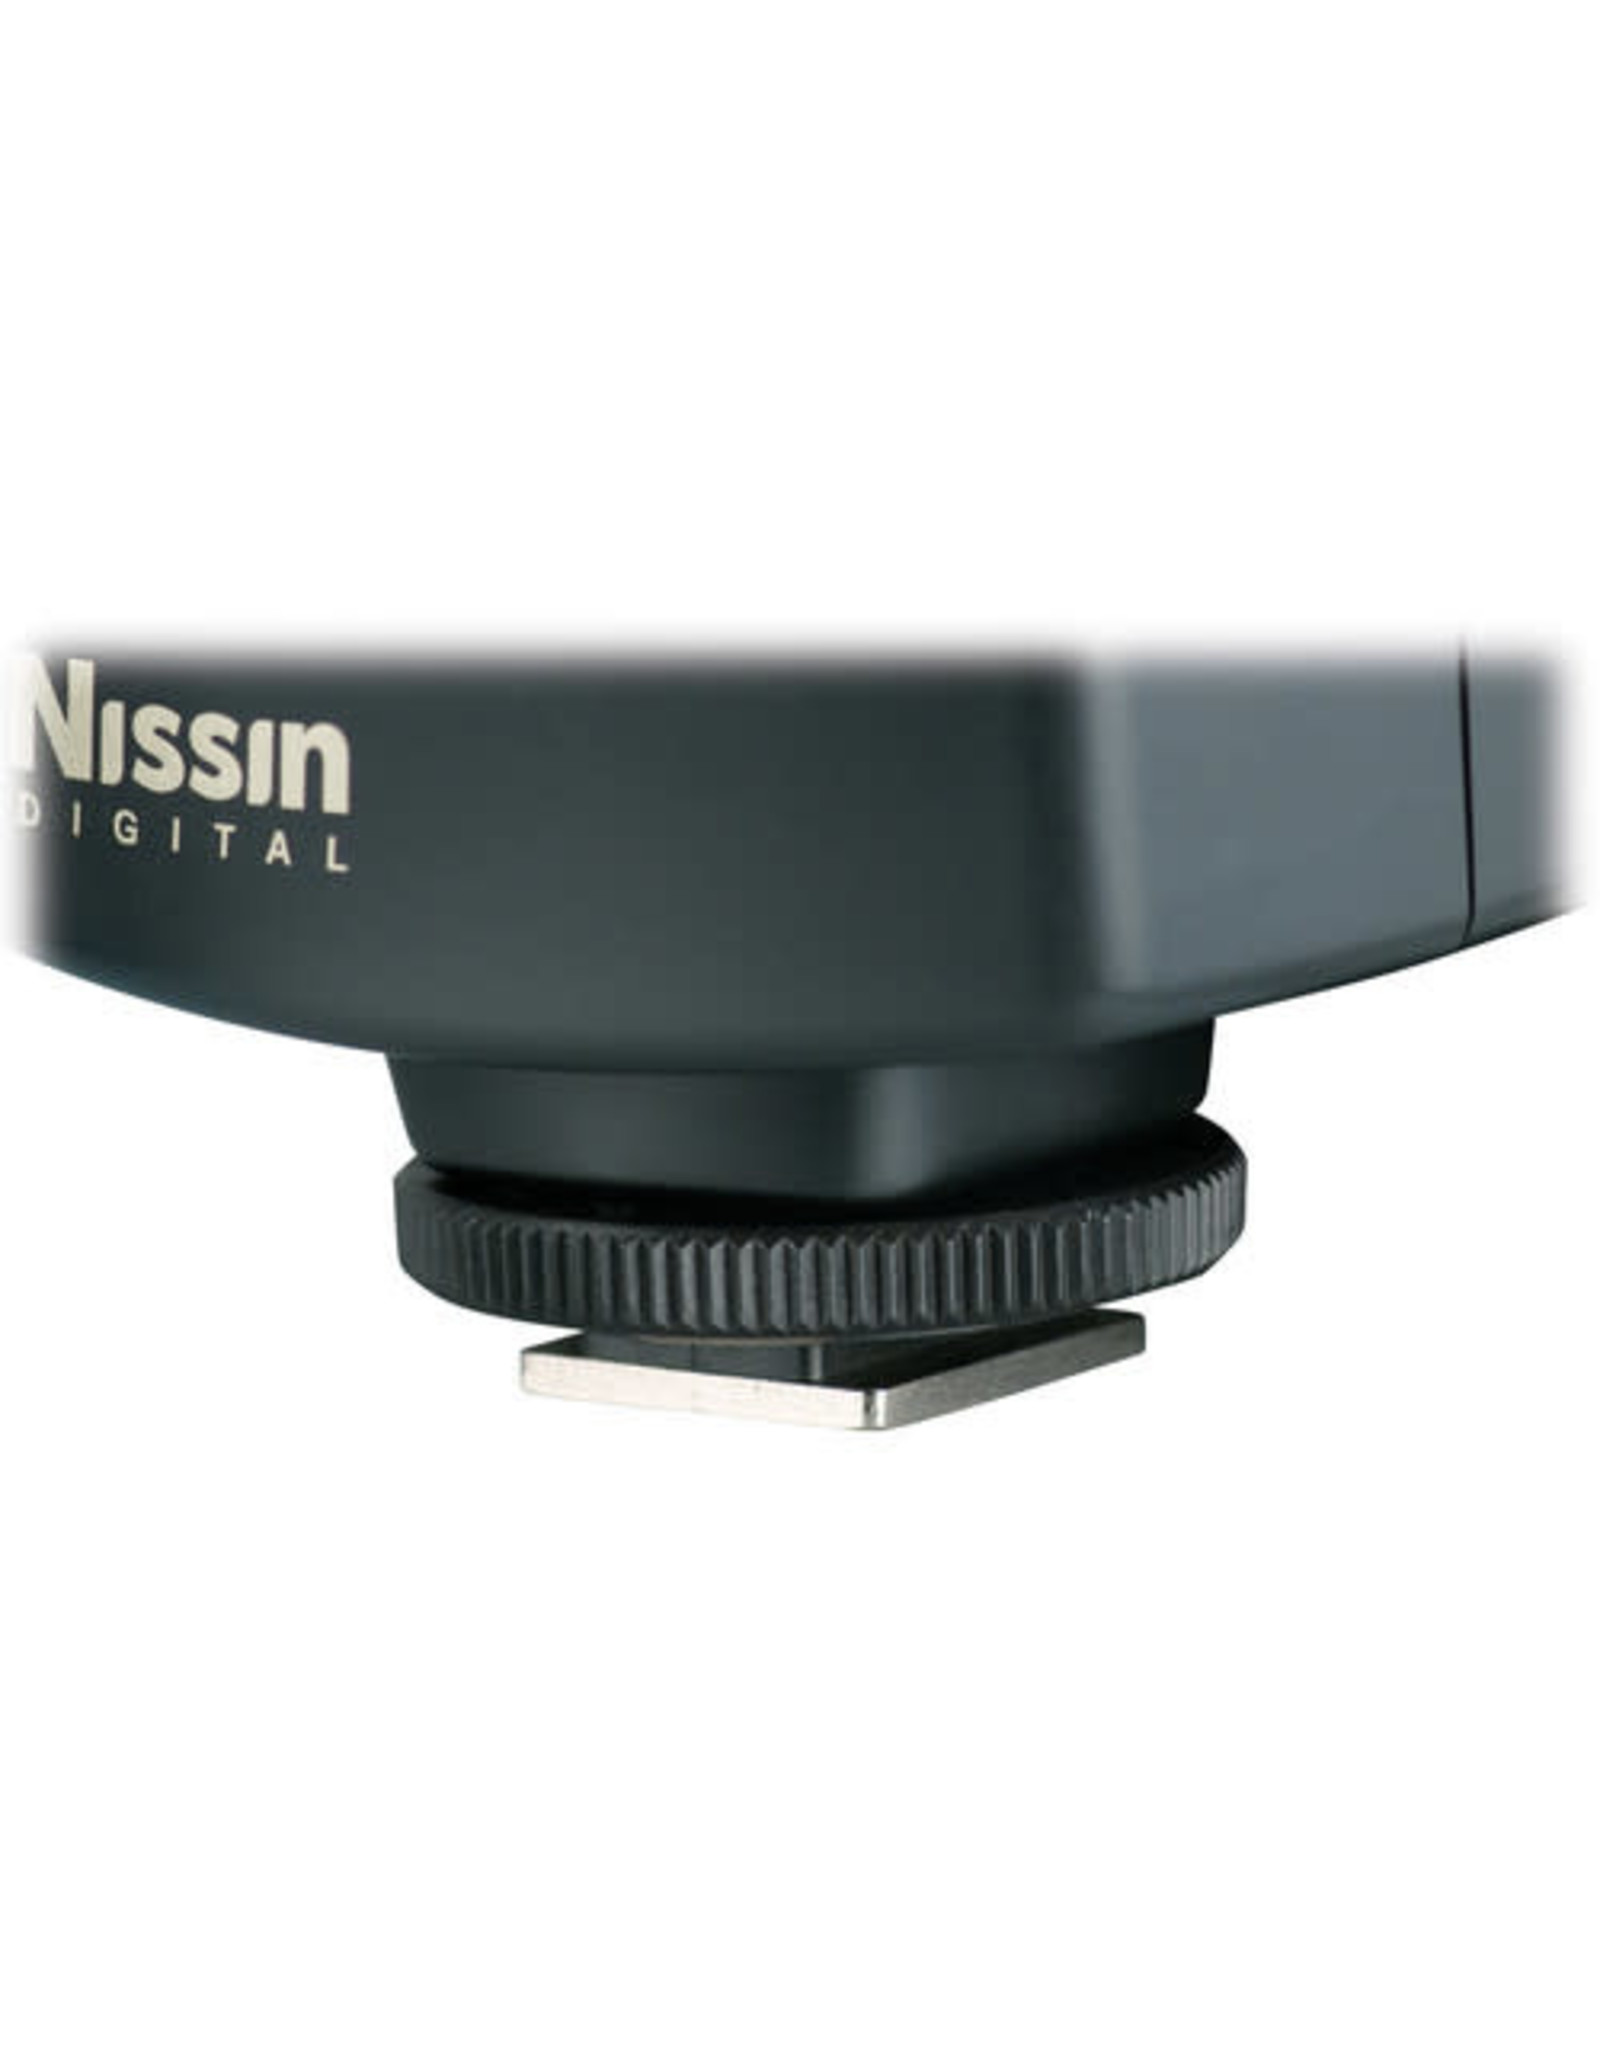 Nissin Nissin MF18 Macro Ring Flash for Nikon TTL